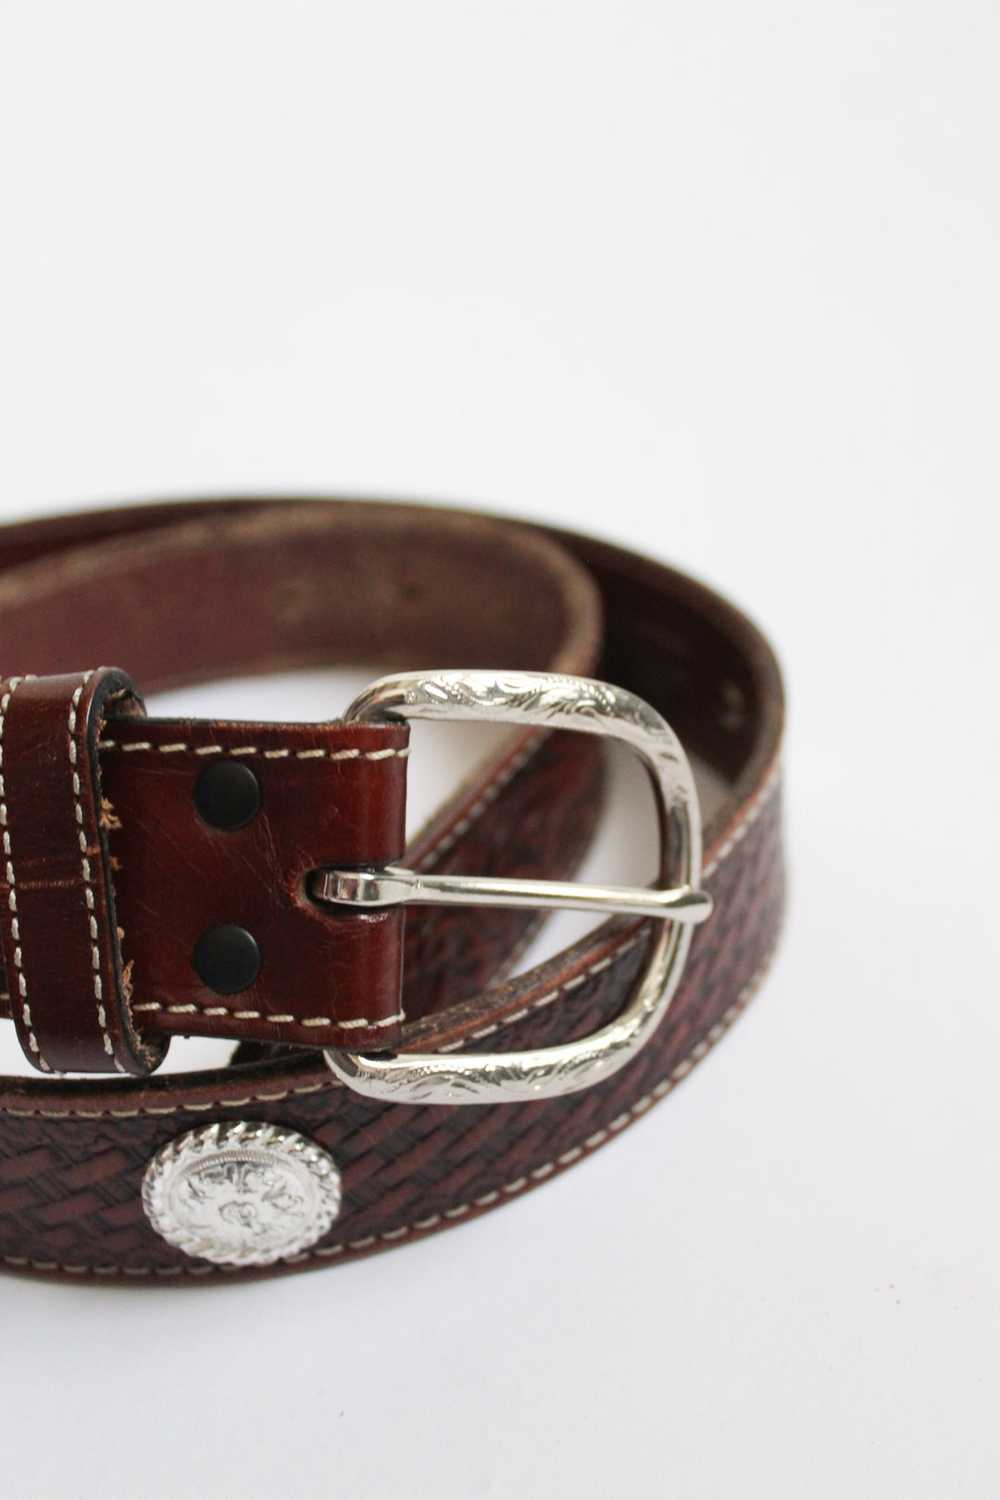 tooled leather belt - image 3